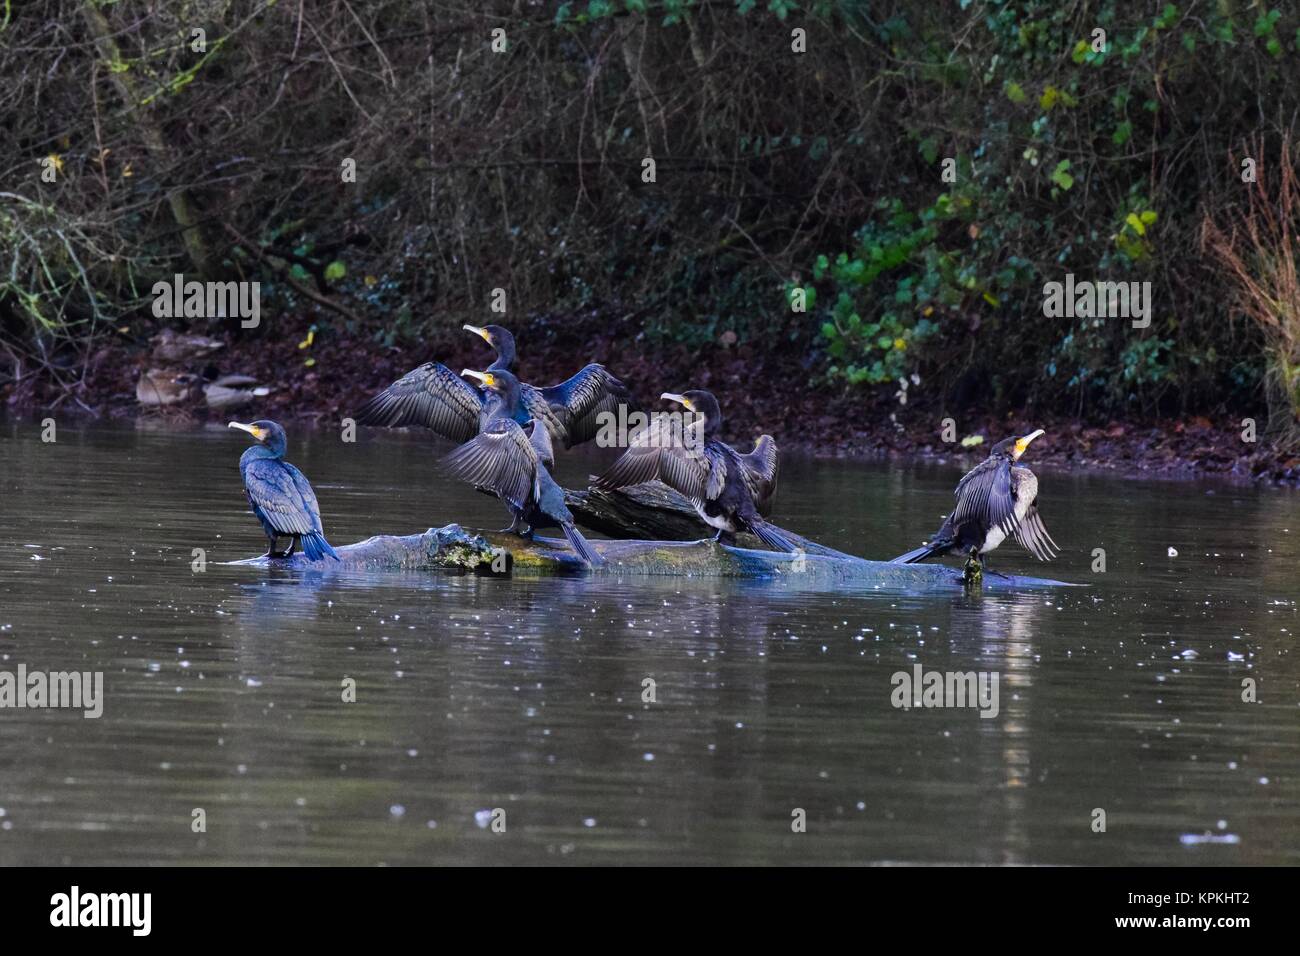 Les oiseaux à Chard Somerset réservoir uk. Heron et cormorans sur la rupture d'un arbre dans l'eau Banque D'Images